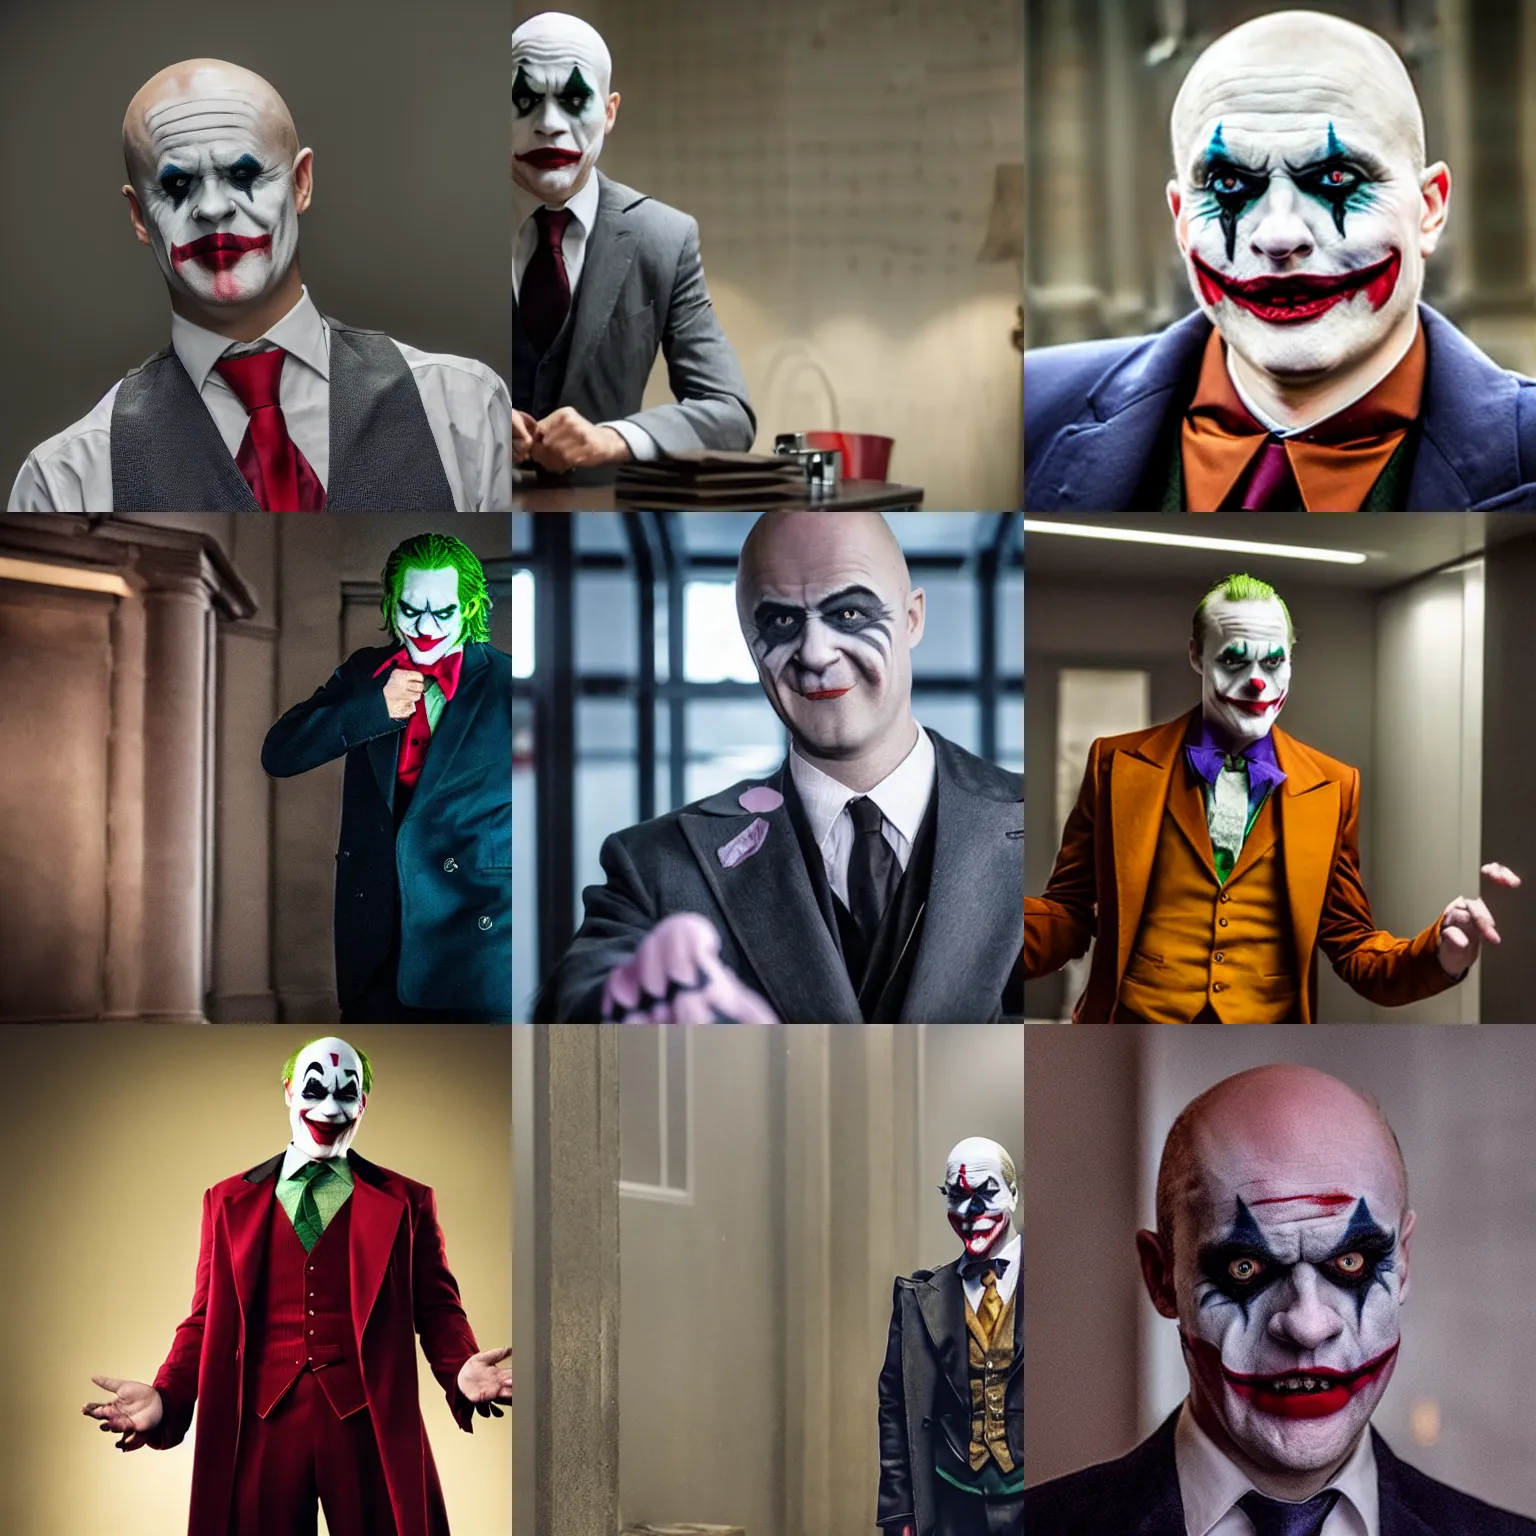 Prompt: A still of Fredrik Reinfeldt as Joker in Joker